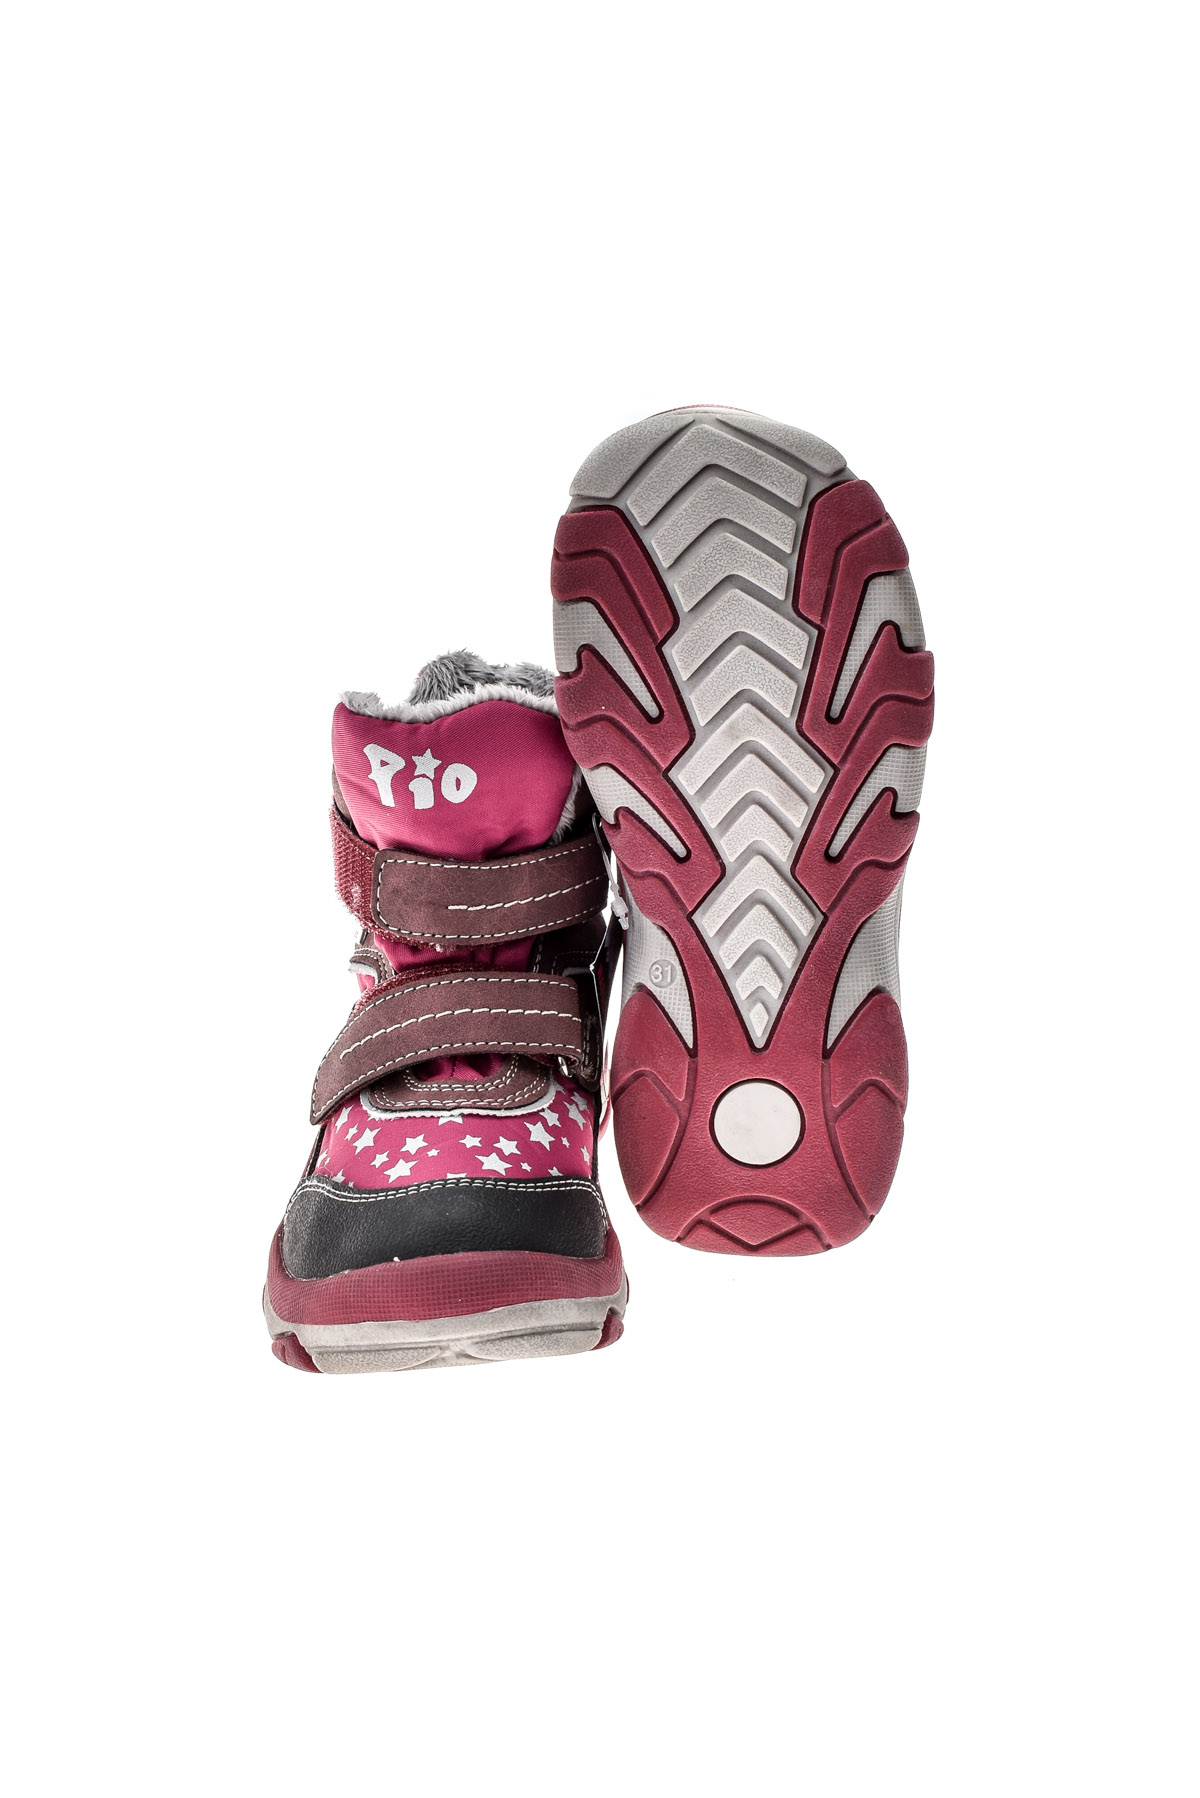 Buty dla dziewczynki - Pio TEX - 4